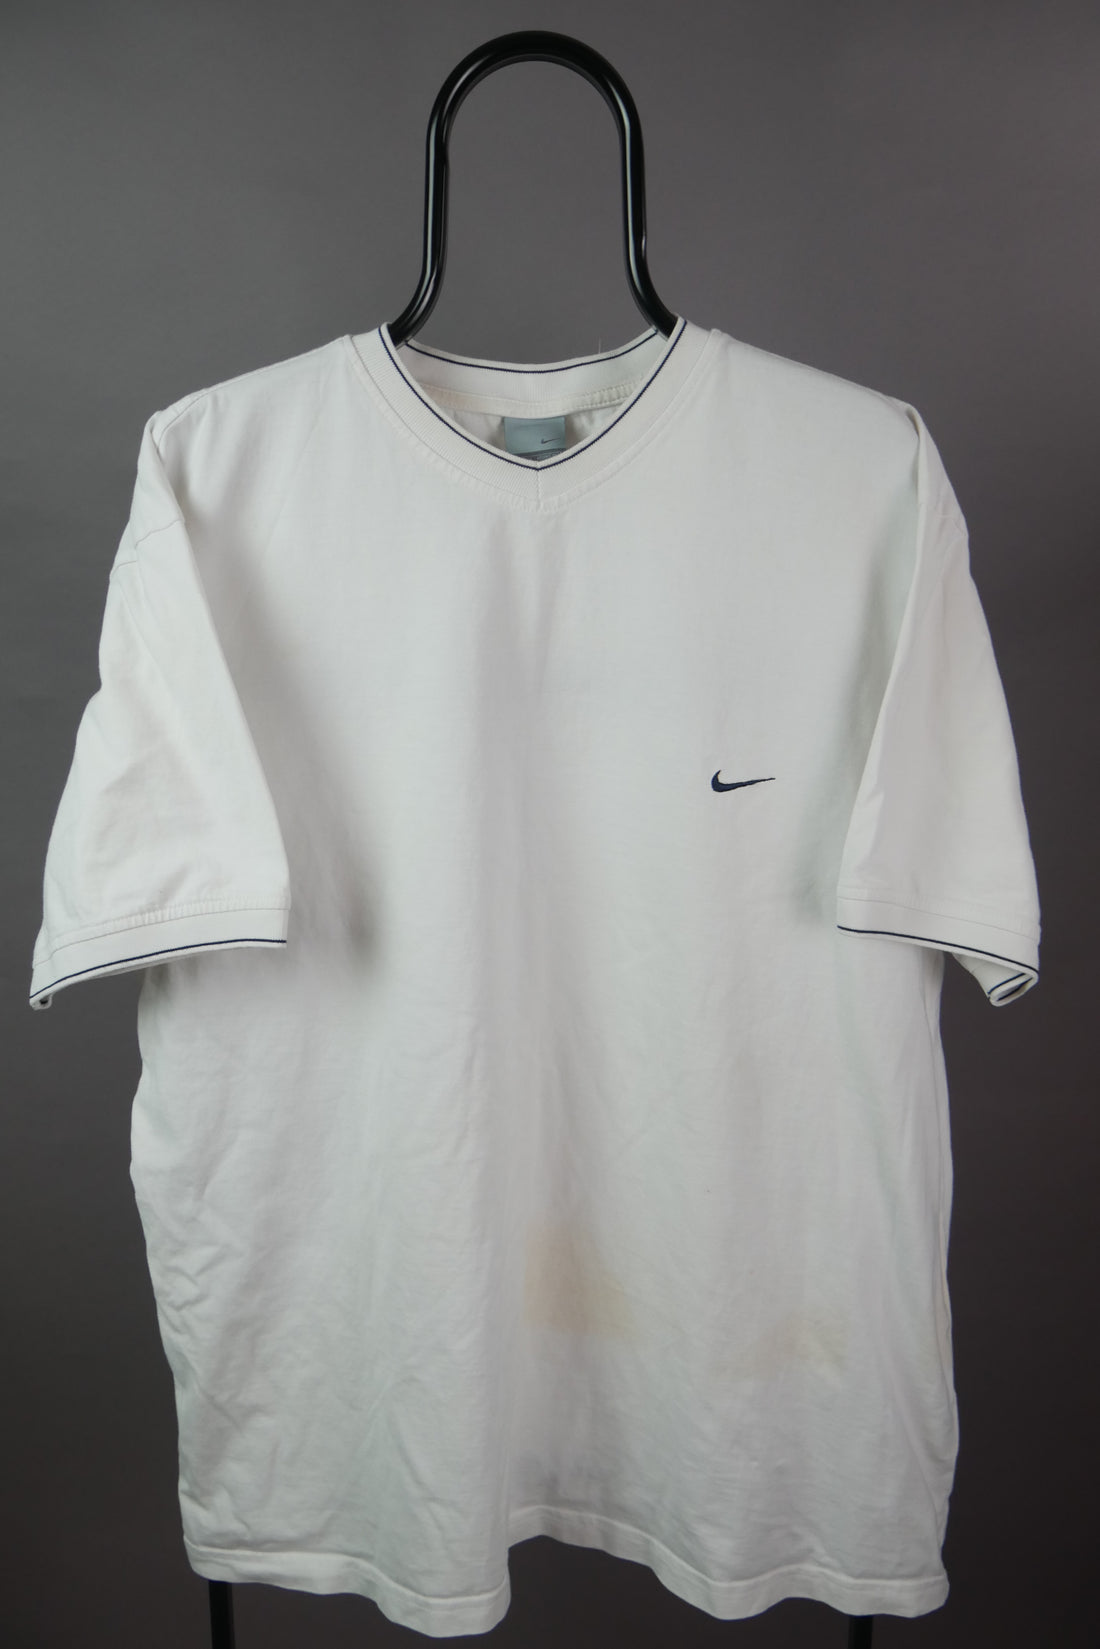 The Vintage Nike V Neck T-Shirt (XXL)